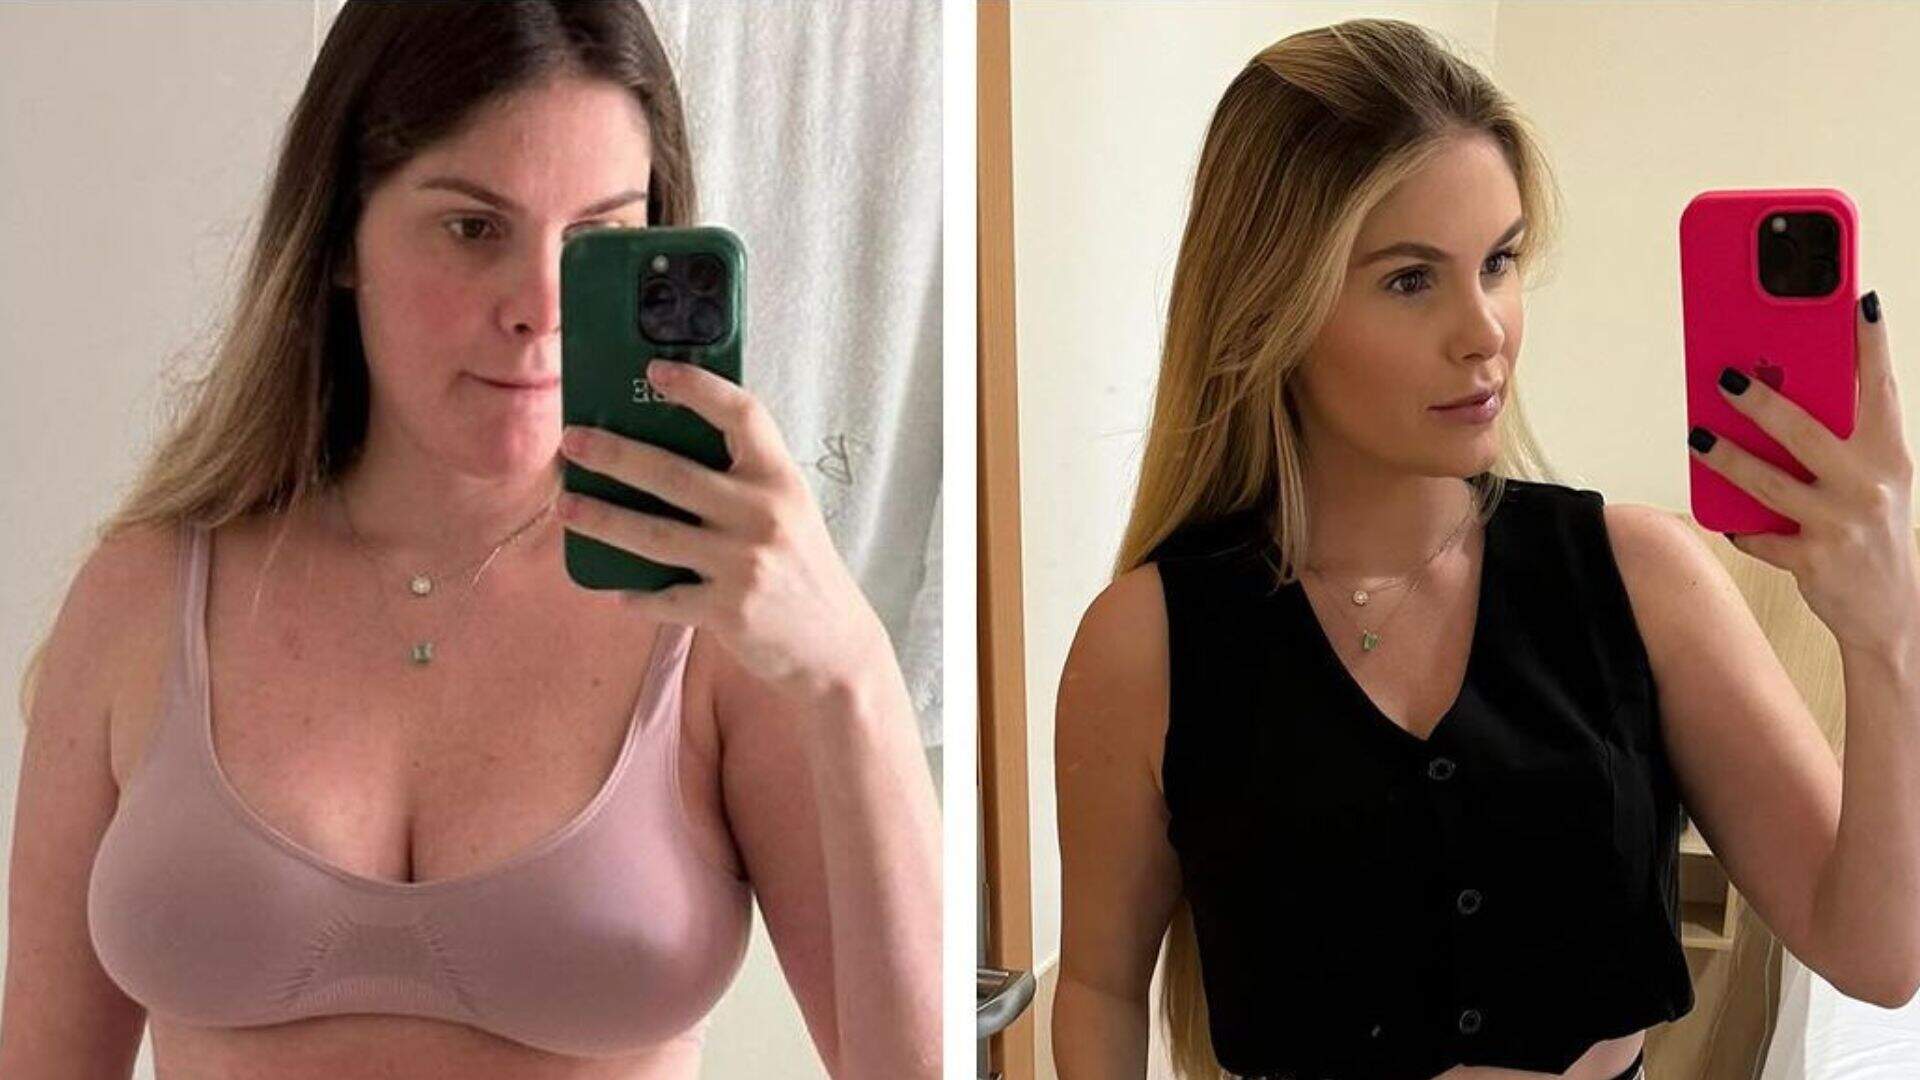 Quase 6 meses após dar à luz gêmeos, Bárbara Evans perde 17 kg e mostra transformação no corpo - Metropolitana FM